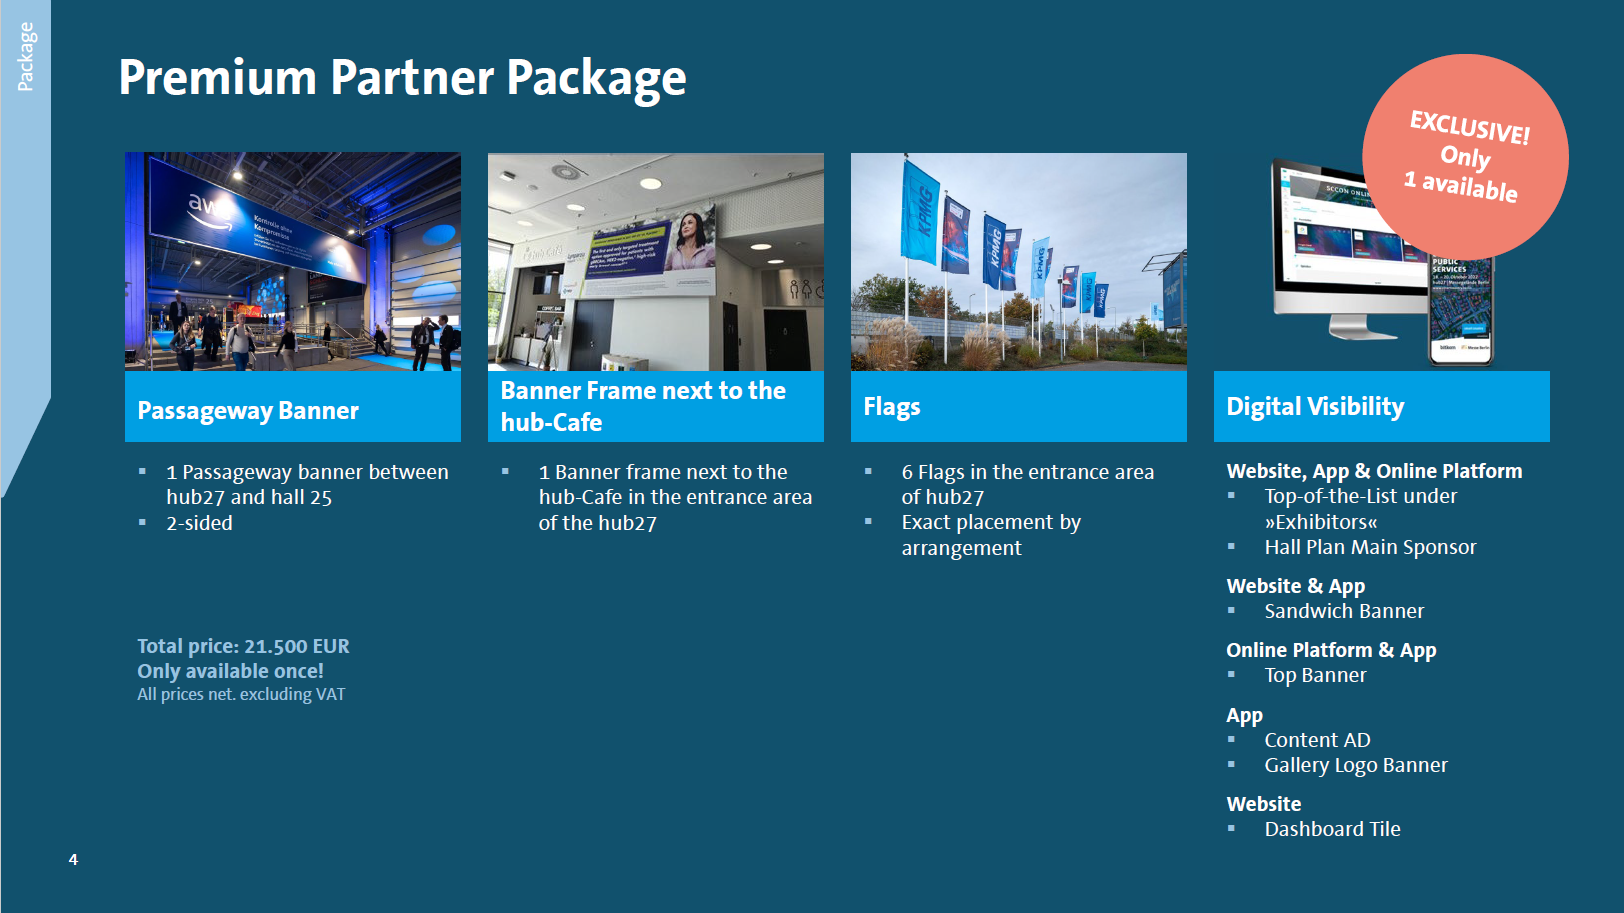 Premium Partner Package